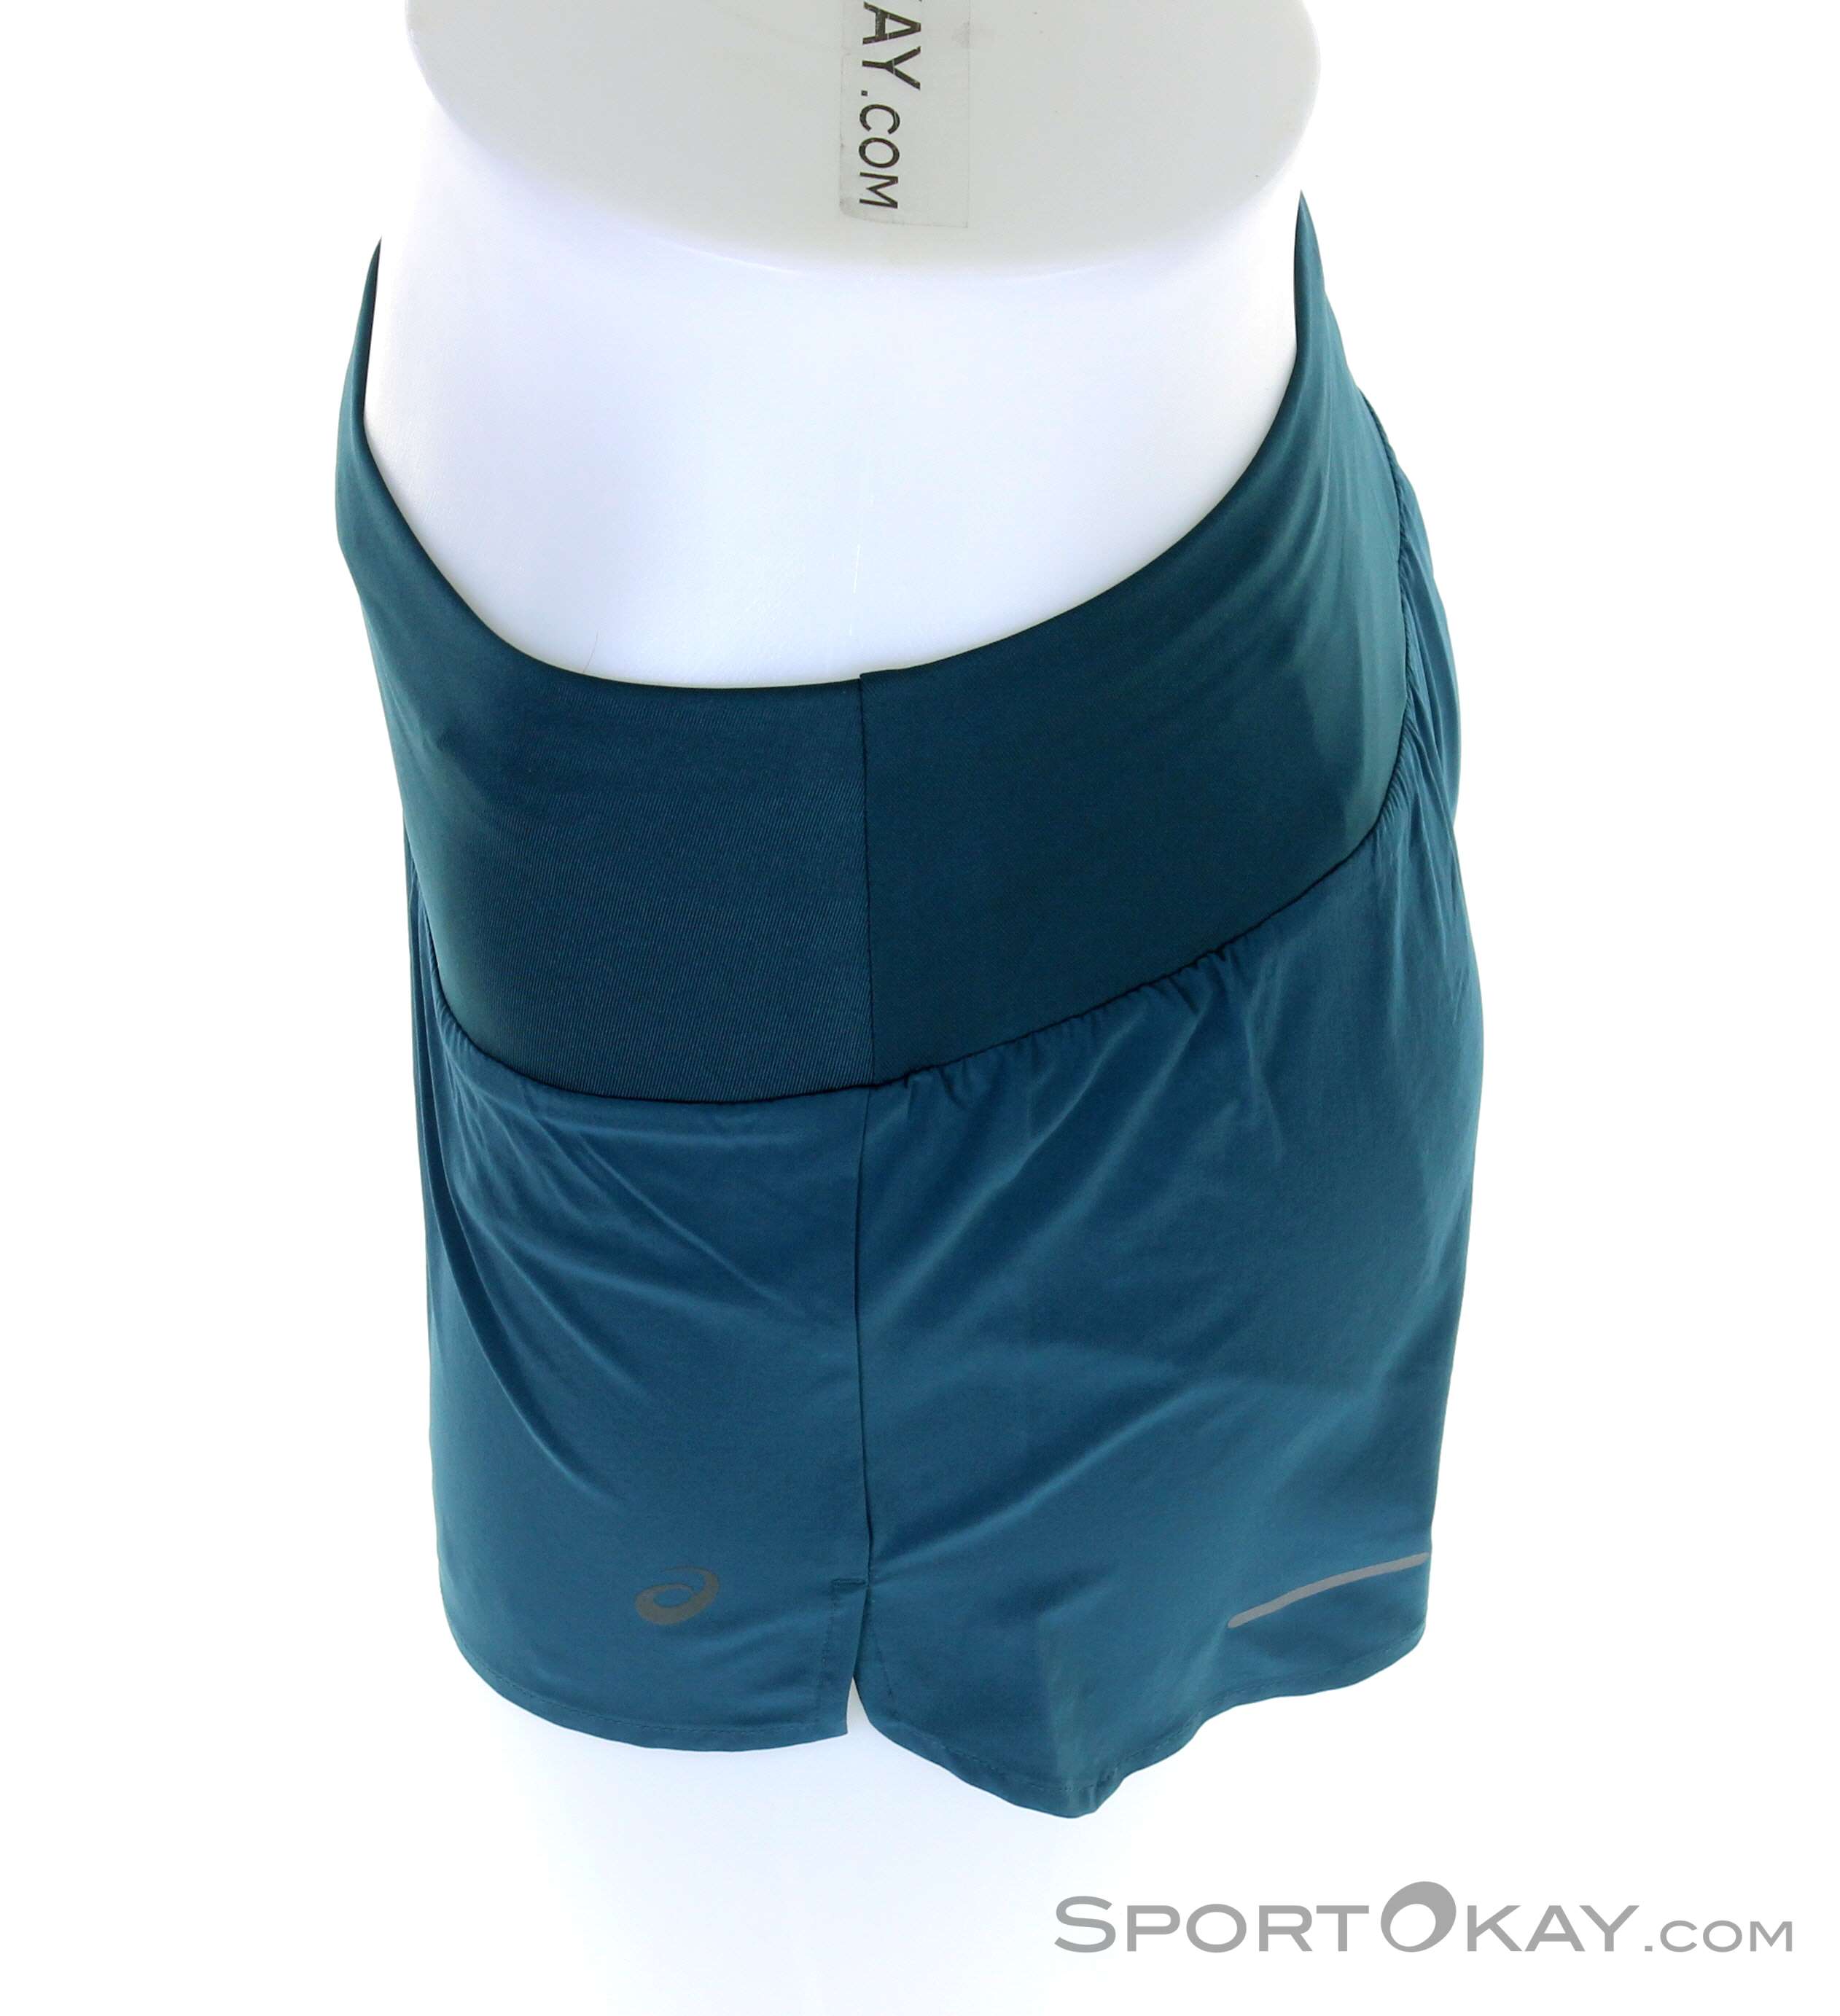 - - Running - Asics Running Shorts - Clothing in Pants Short Women Road Running All Asics 3,5